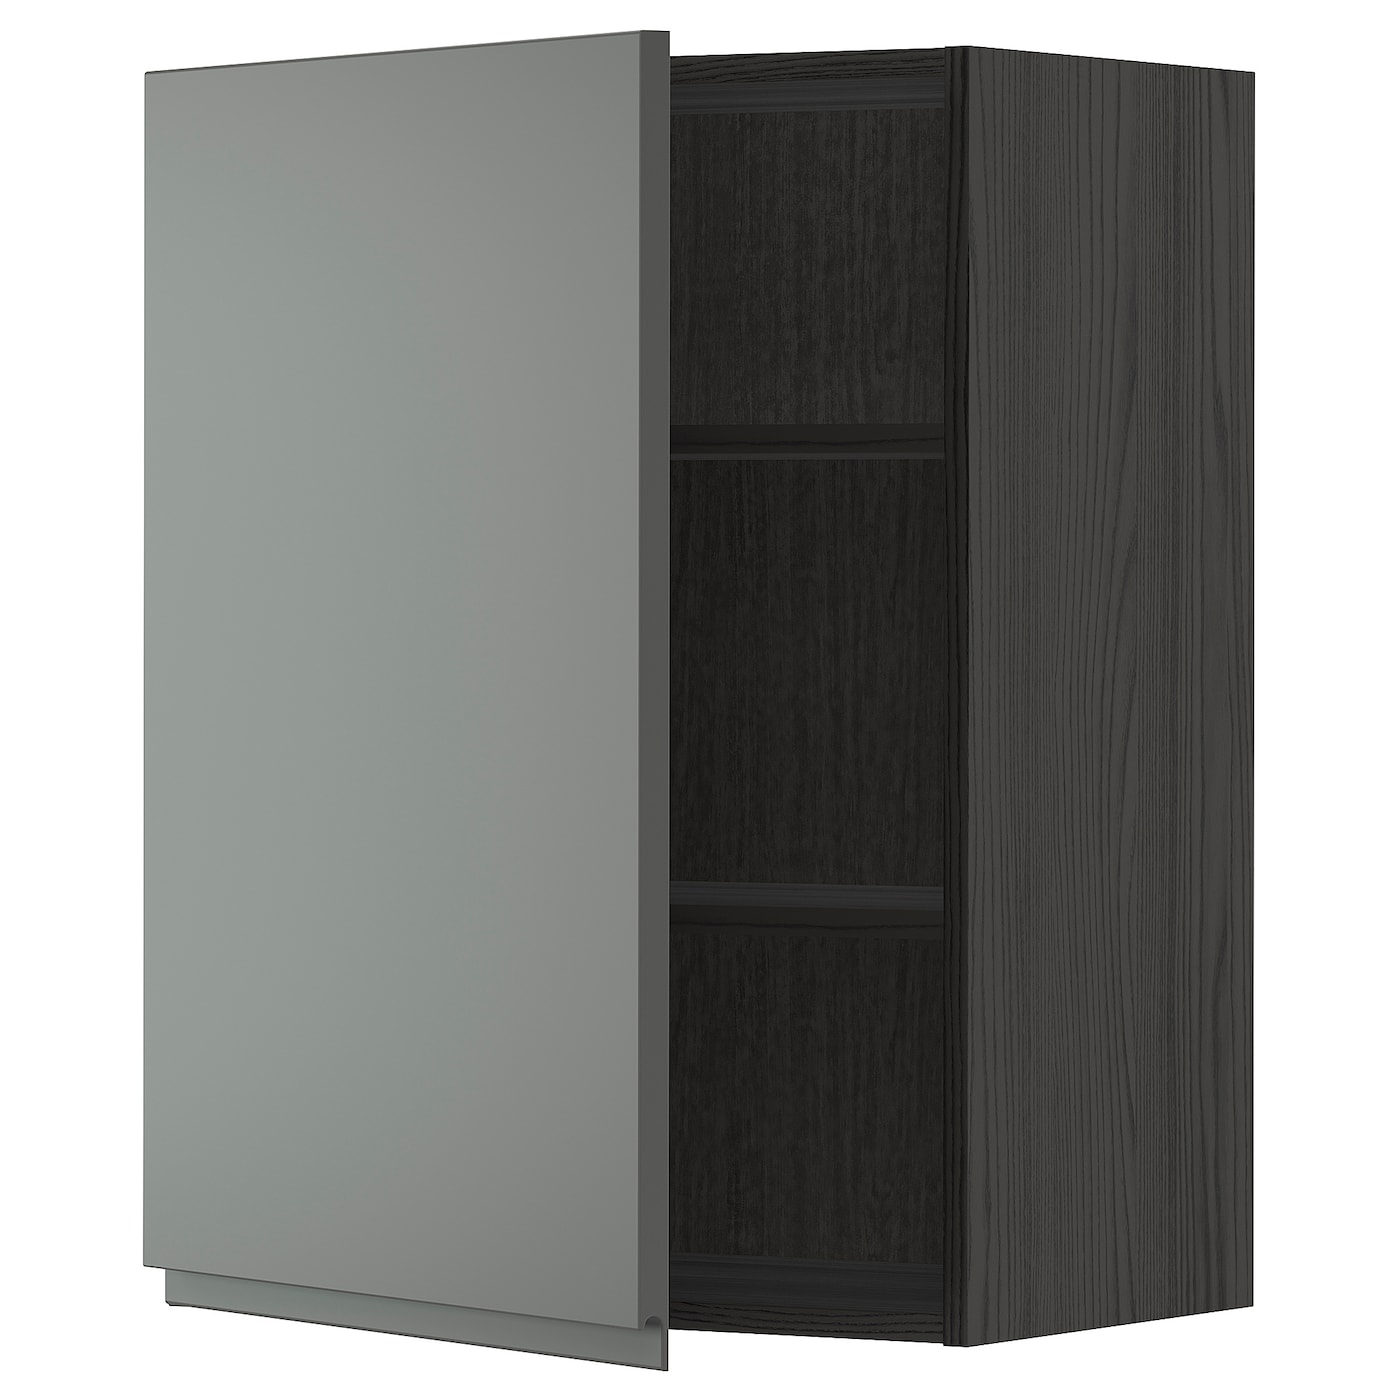 Навесной шкаф с полкой - METOD IKEA/ МЕТОД ИКЕА, 60х80 см, черный/темно-серый